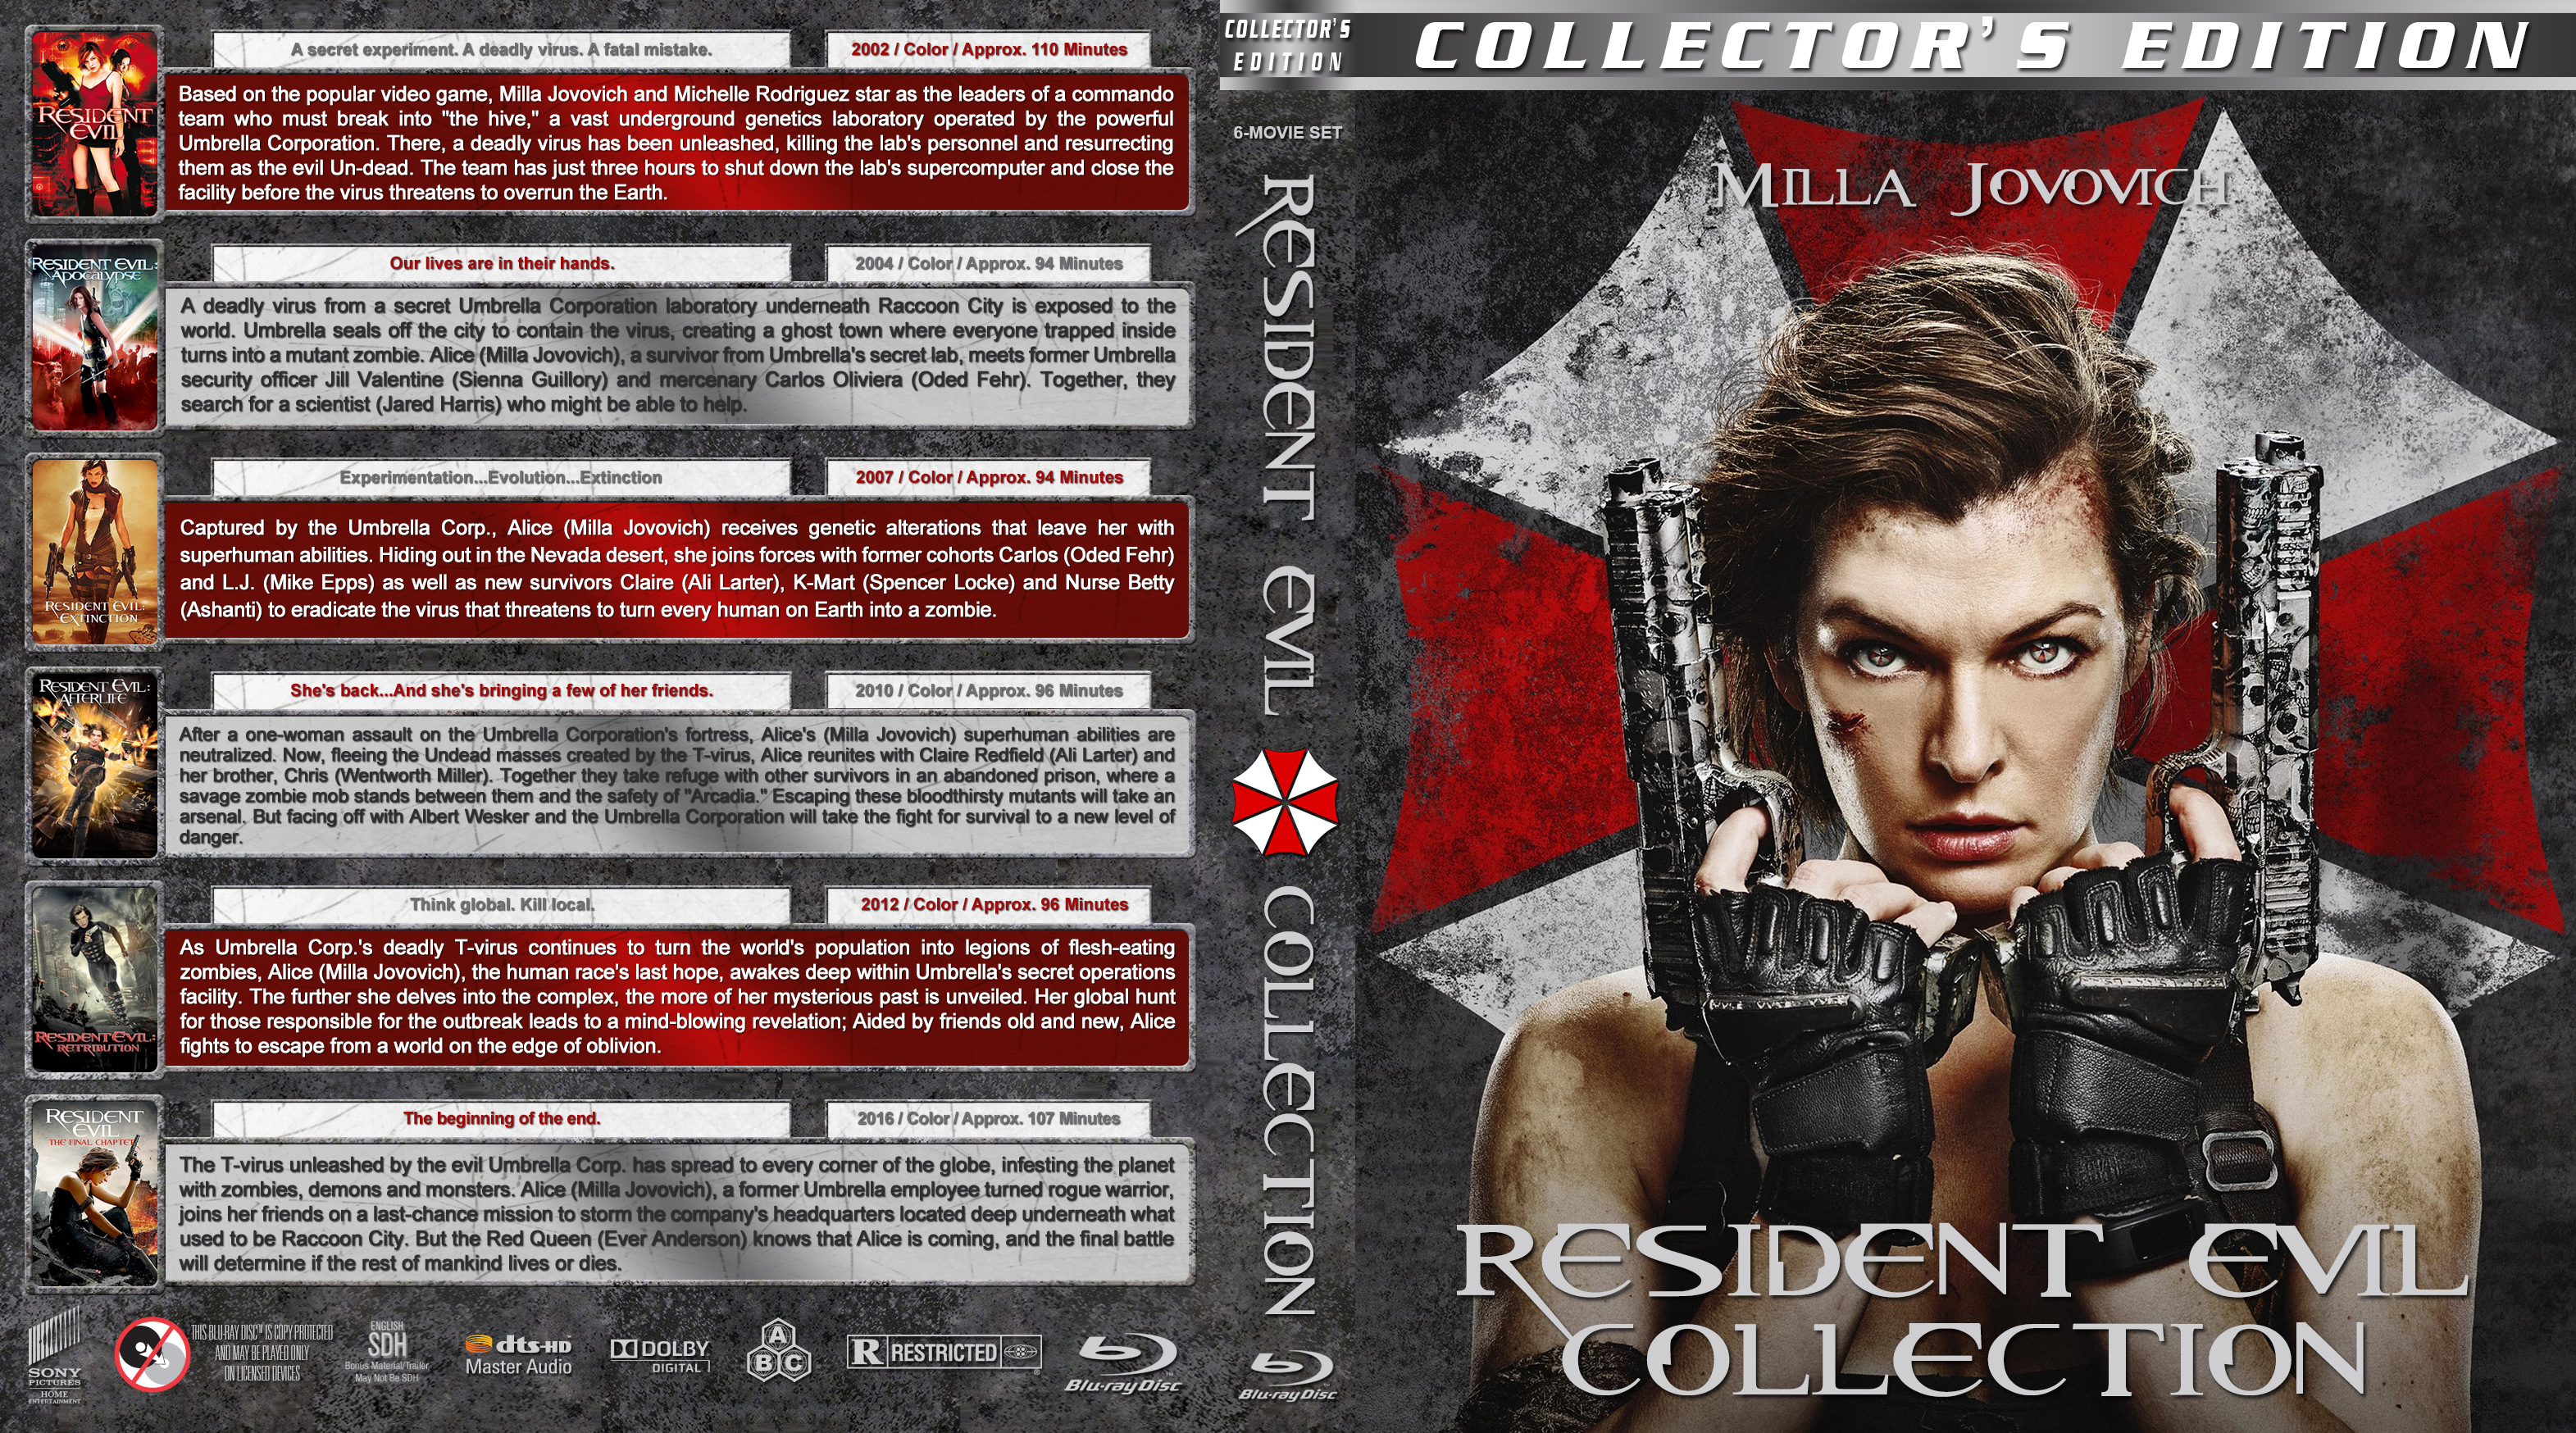 Resident evil collection. Обитель зла 2002 диск. Resident Evil 2002 Blu ray Cover. Обитель зла 2002 обложка.